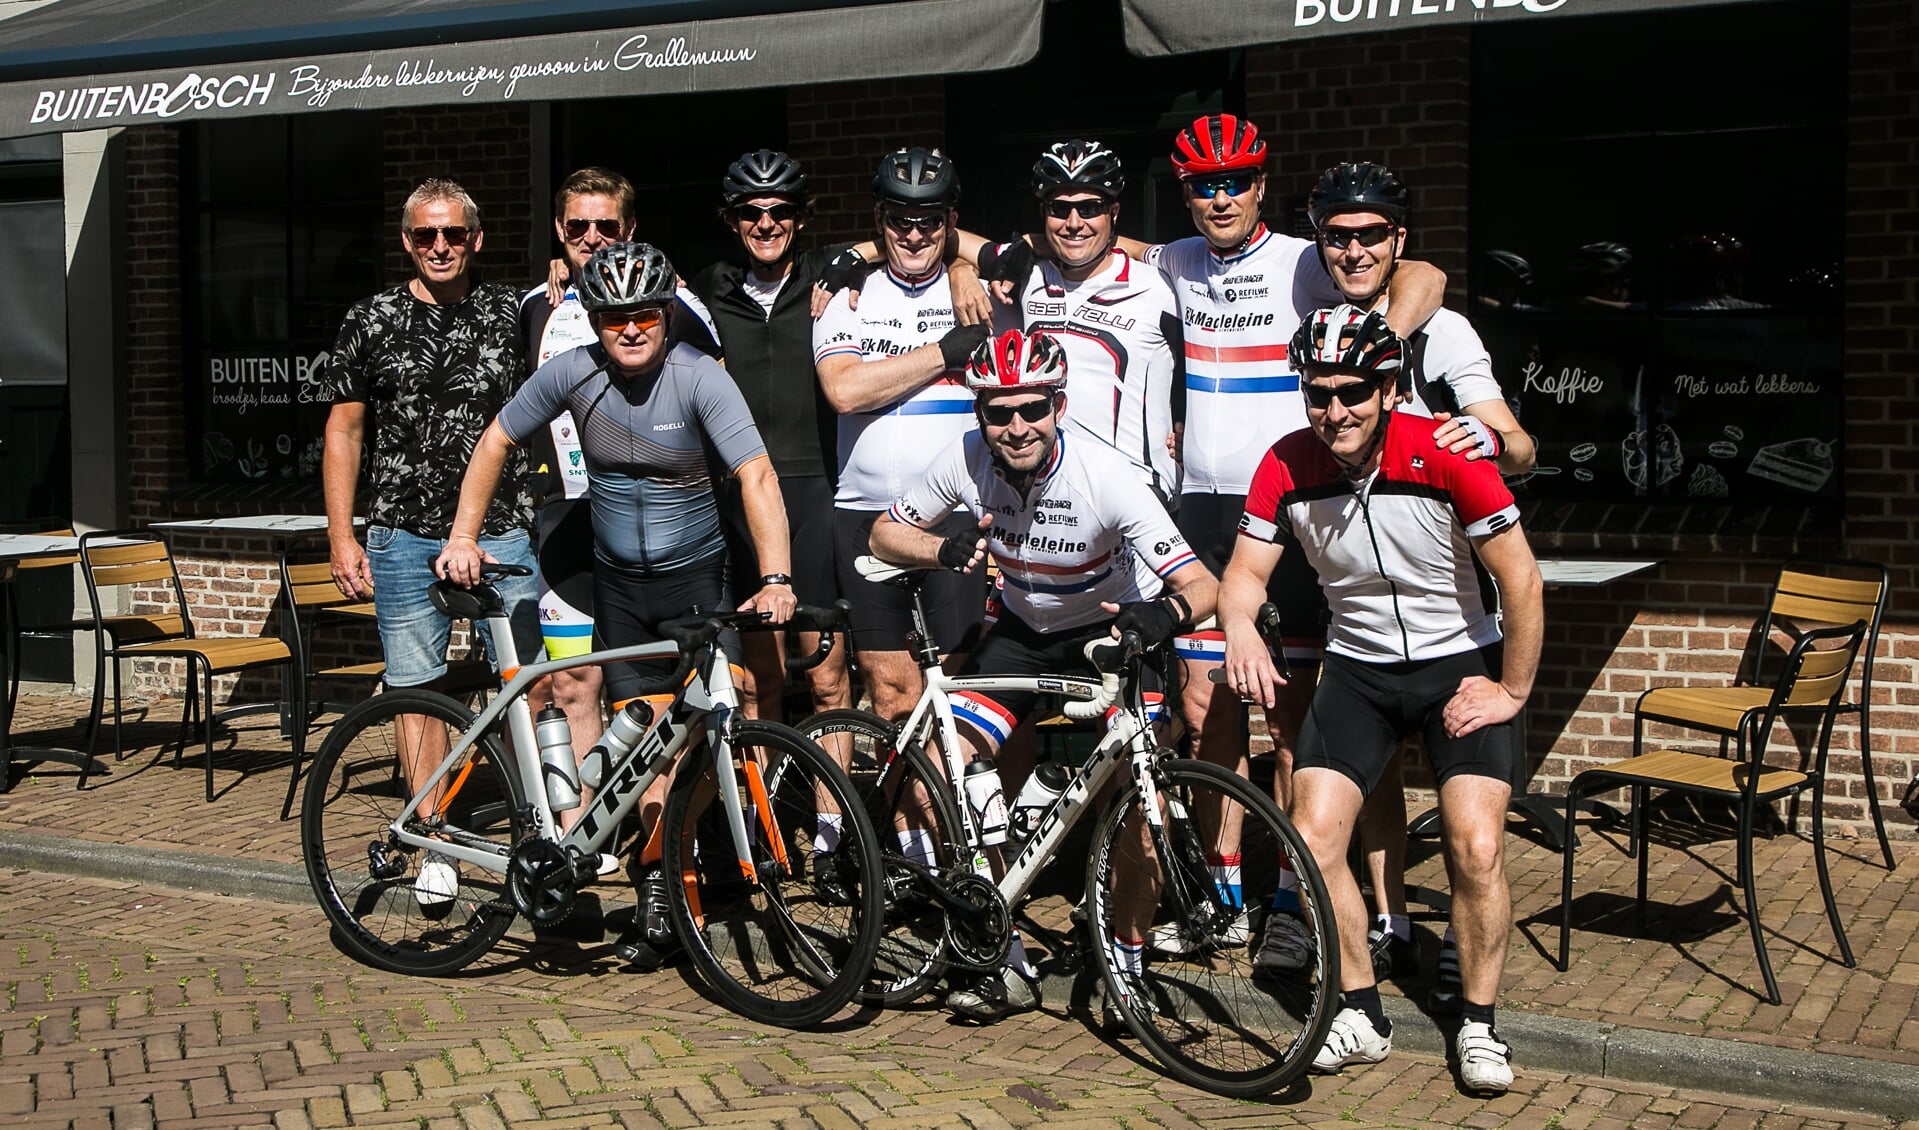 De club vrienden gaat de Alpe d'Huez lopend en per fiets bestijgen.